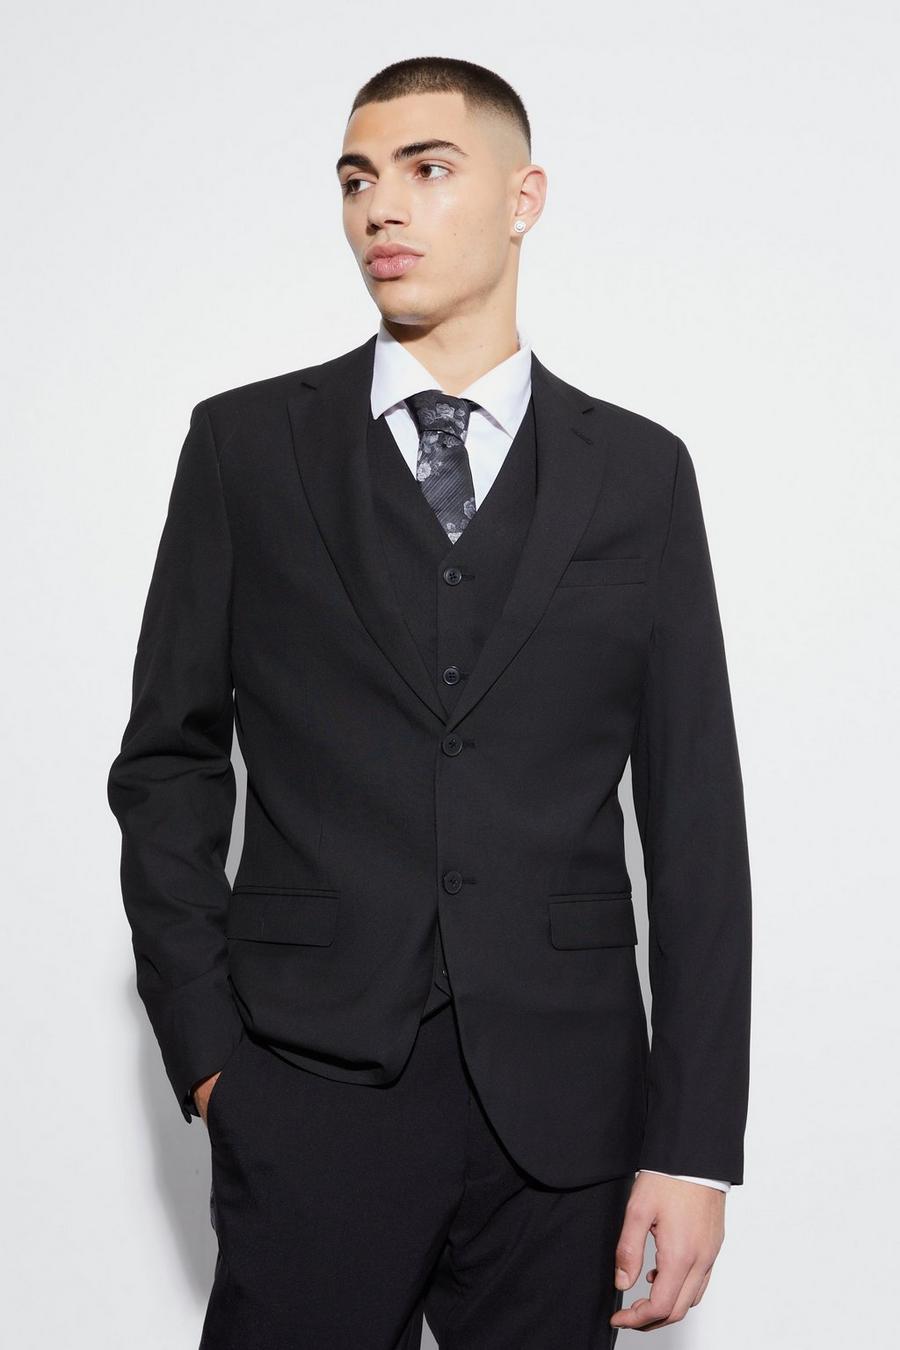 שחור negro ז'קט חליפה סקיני עם רכיסה אחת